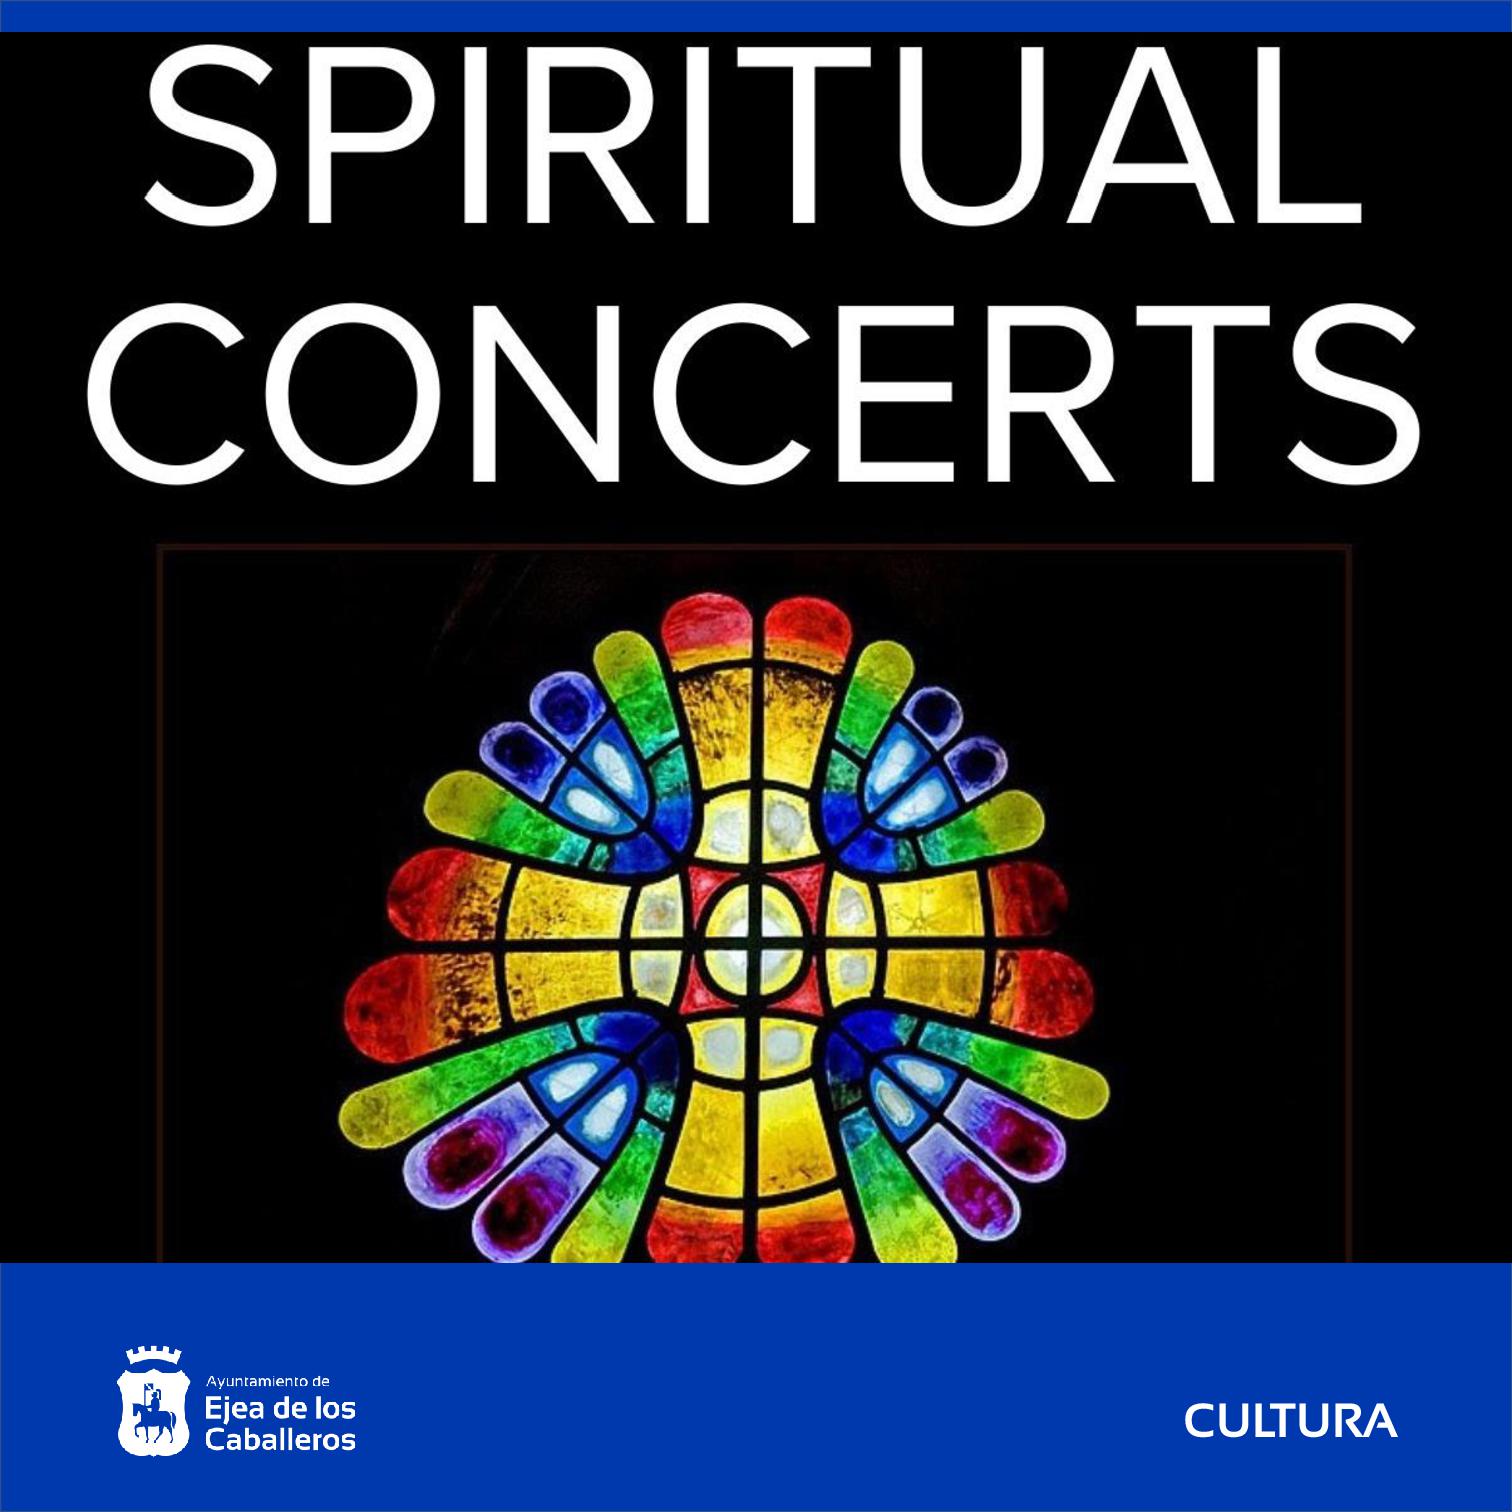 En este momento estás viendo “Spiritual concerts”: 70 voces cantando juntas en un concierto participativo de la Coral Polifónica Ejea junto a coros de Zaragoza y María de Huerva